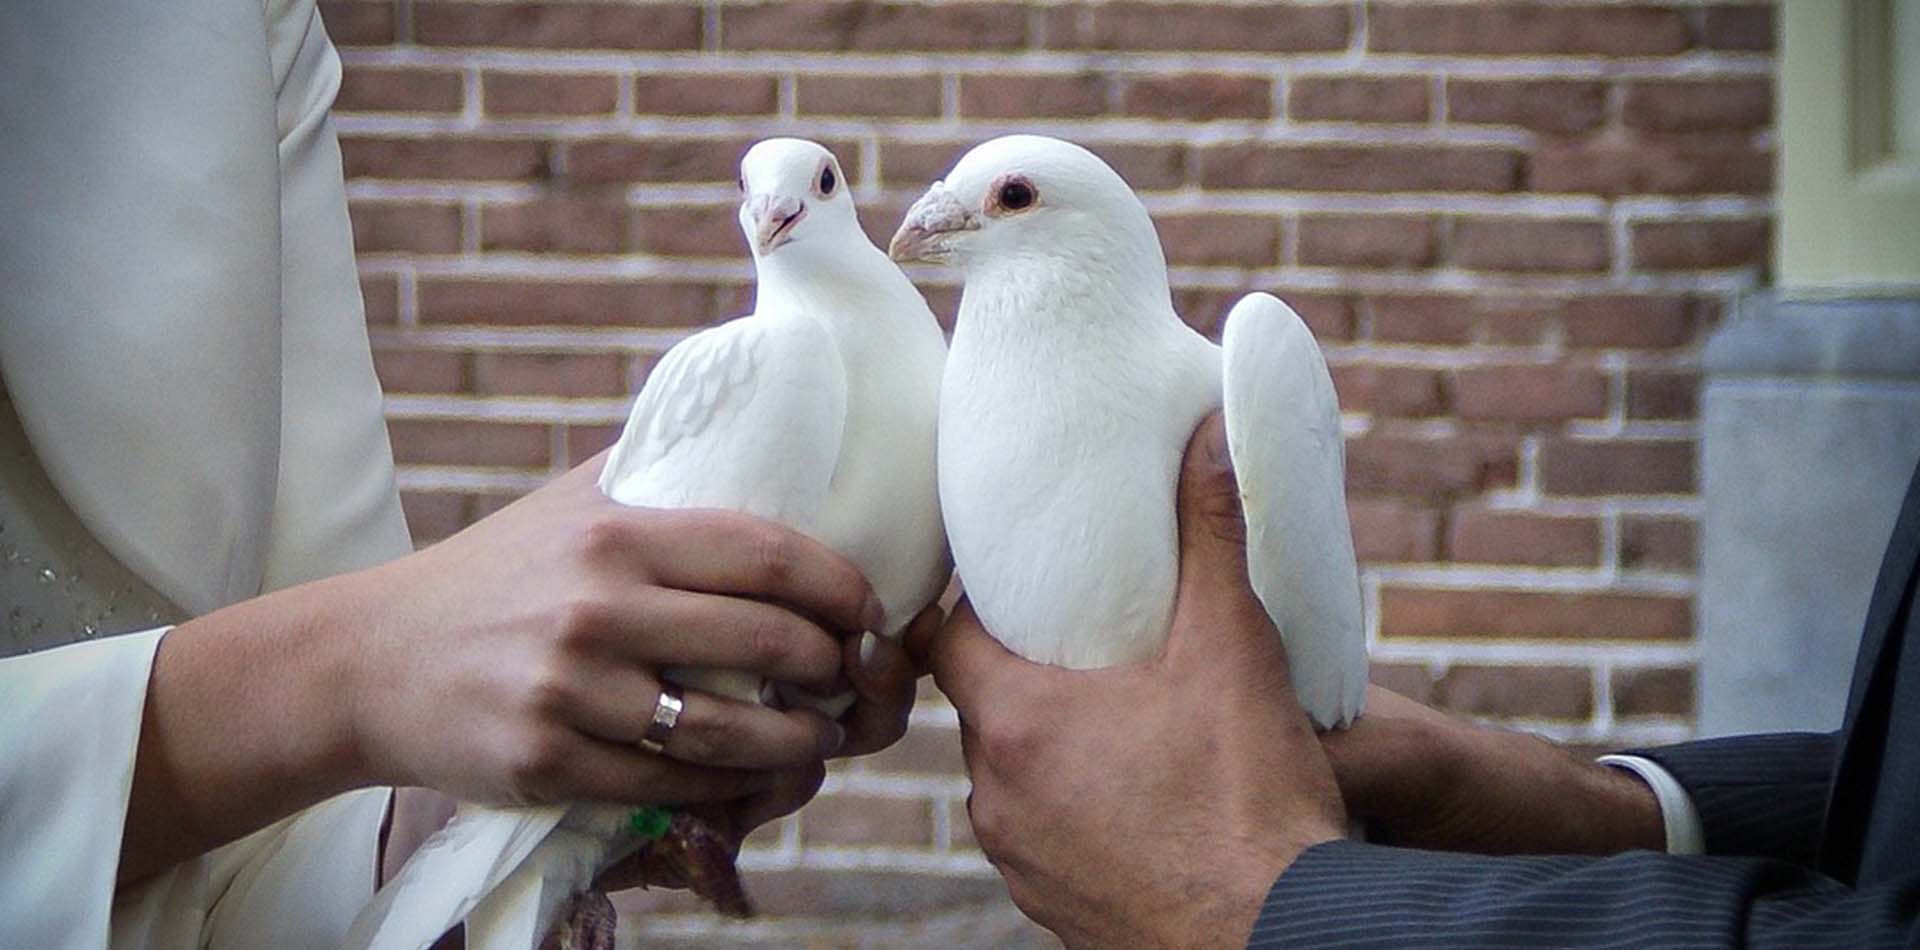 Frau und Mann halten zwei weisse Tauben in den Haenden zur Hochzeit.